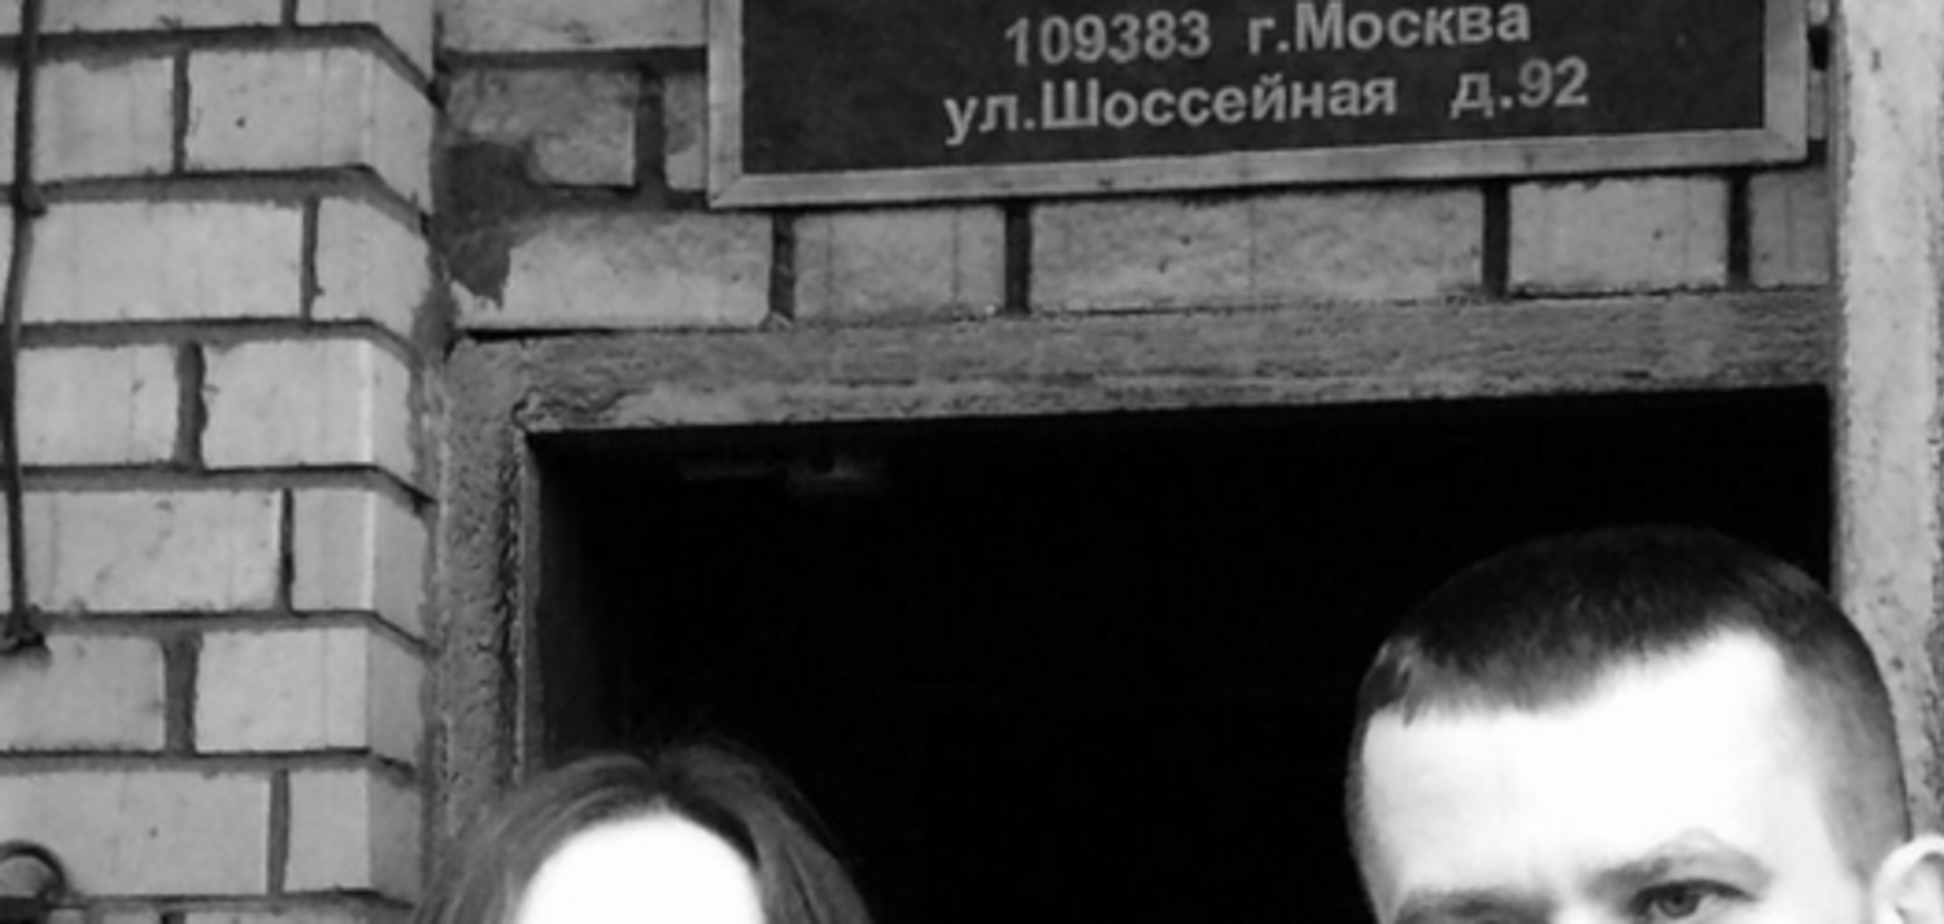 Веру Савченко пустили в Москву и разрешили увидеть голодающую сестру: опубликованы фото